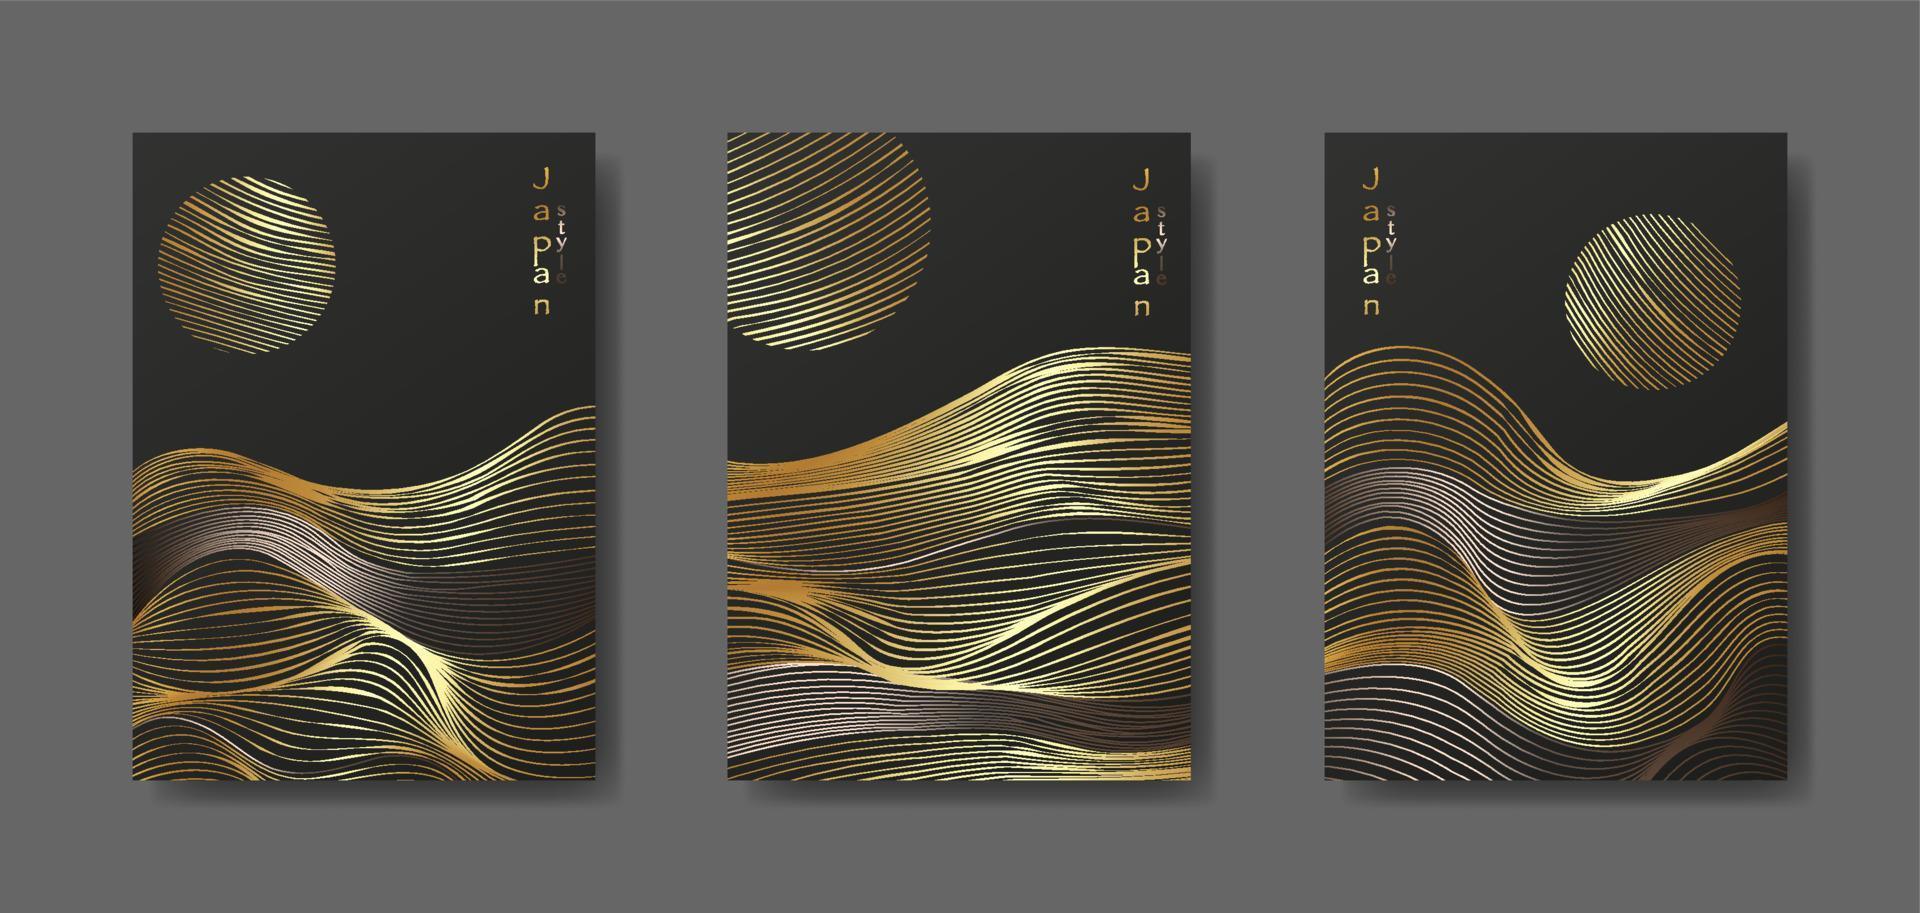 fond de paysage japonais définir des cartes d'illustration vectorielle de modèle d'onde de ligne d'or. modèle abstrait de luxe doré avec motif géométrique. conception de mise en page de montagne dans un style oriental, brochure verticale vecteur